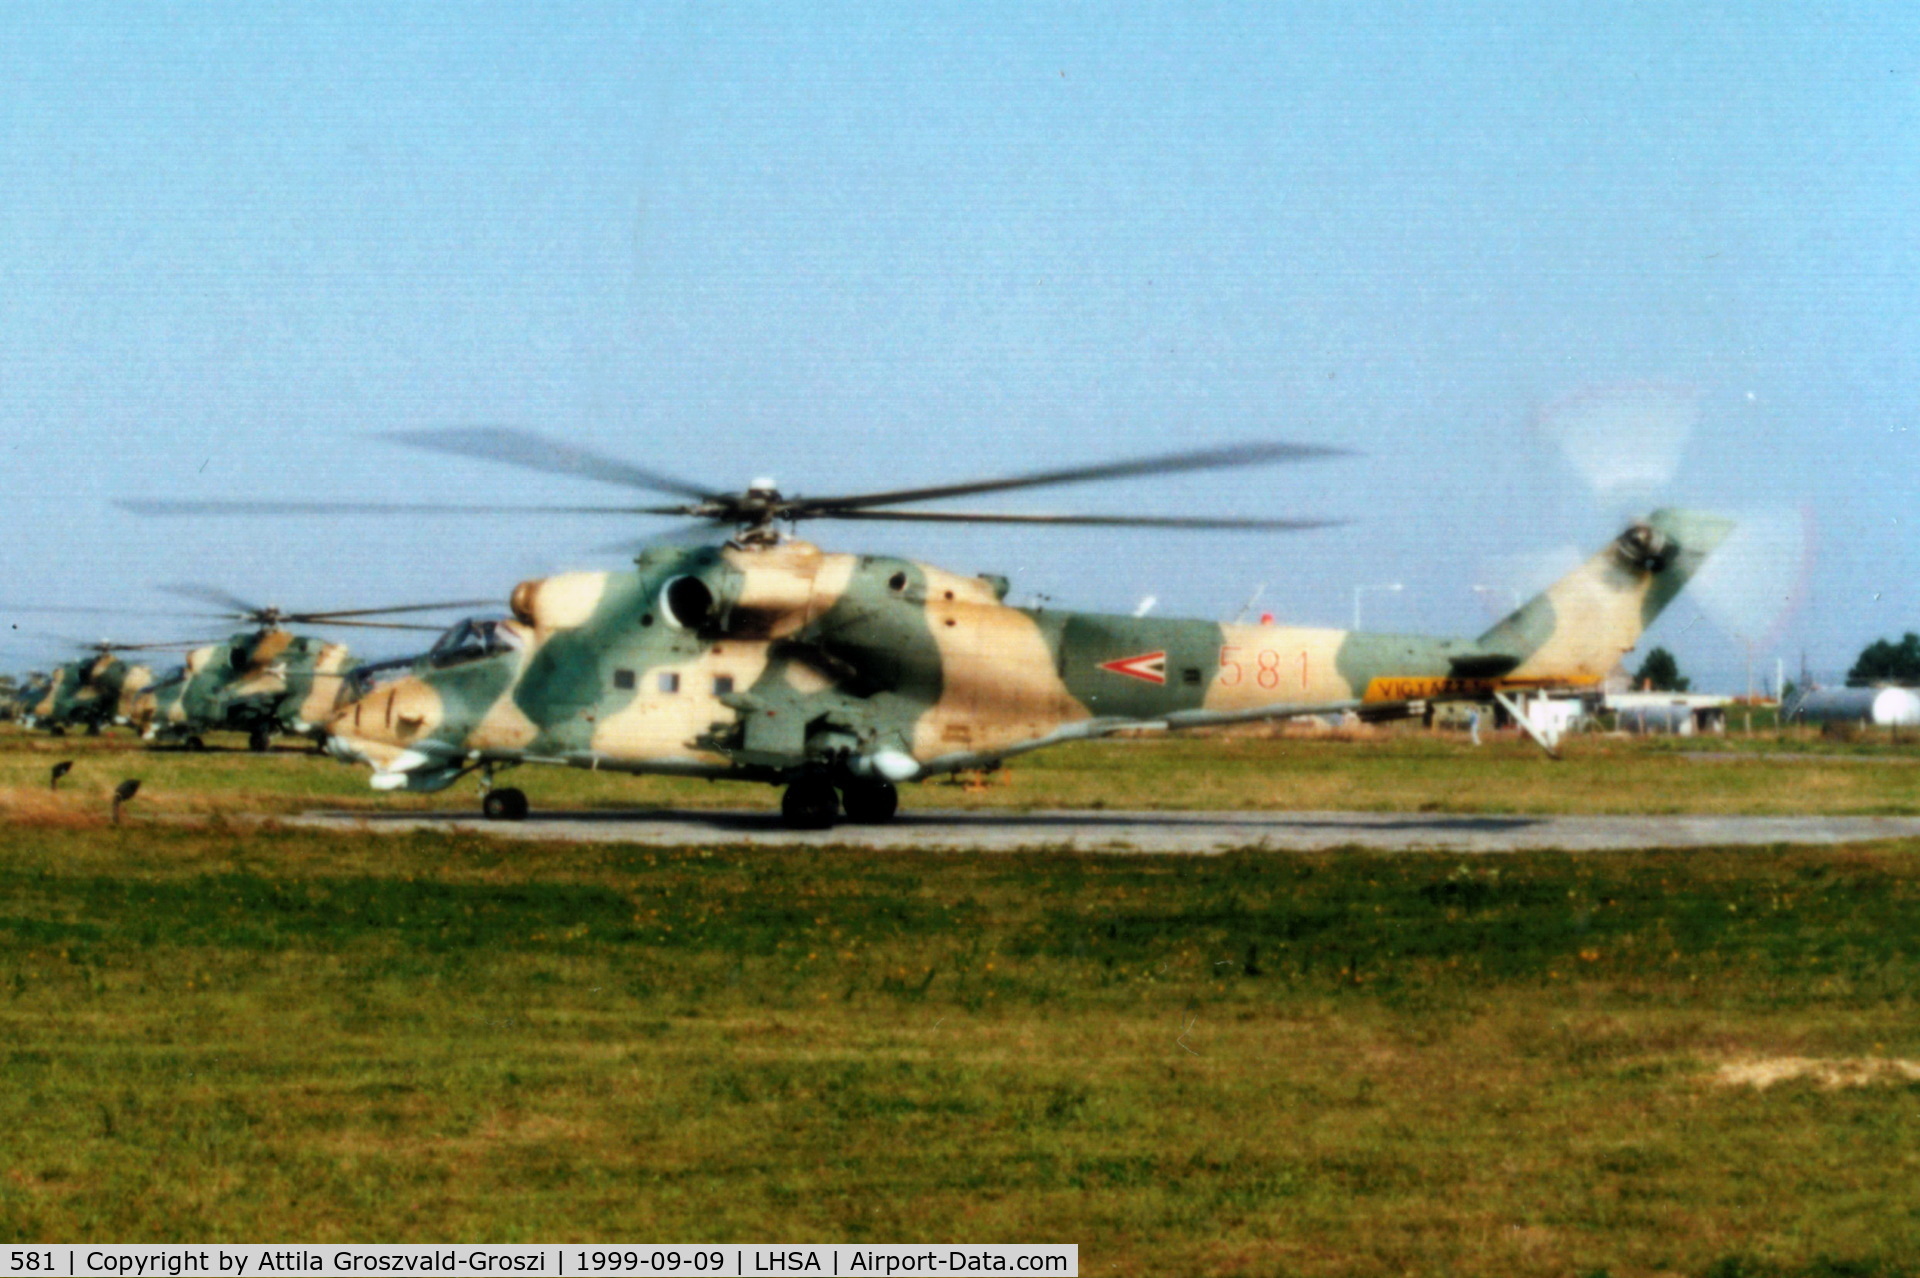 581, 1985 Mil Mi-24D Hind C/N 220581, LHSA - Szentkirályszabadja Airport, Hungary - 1999 Airshow